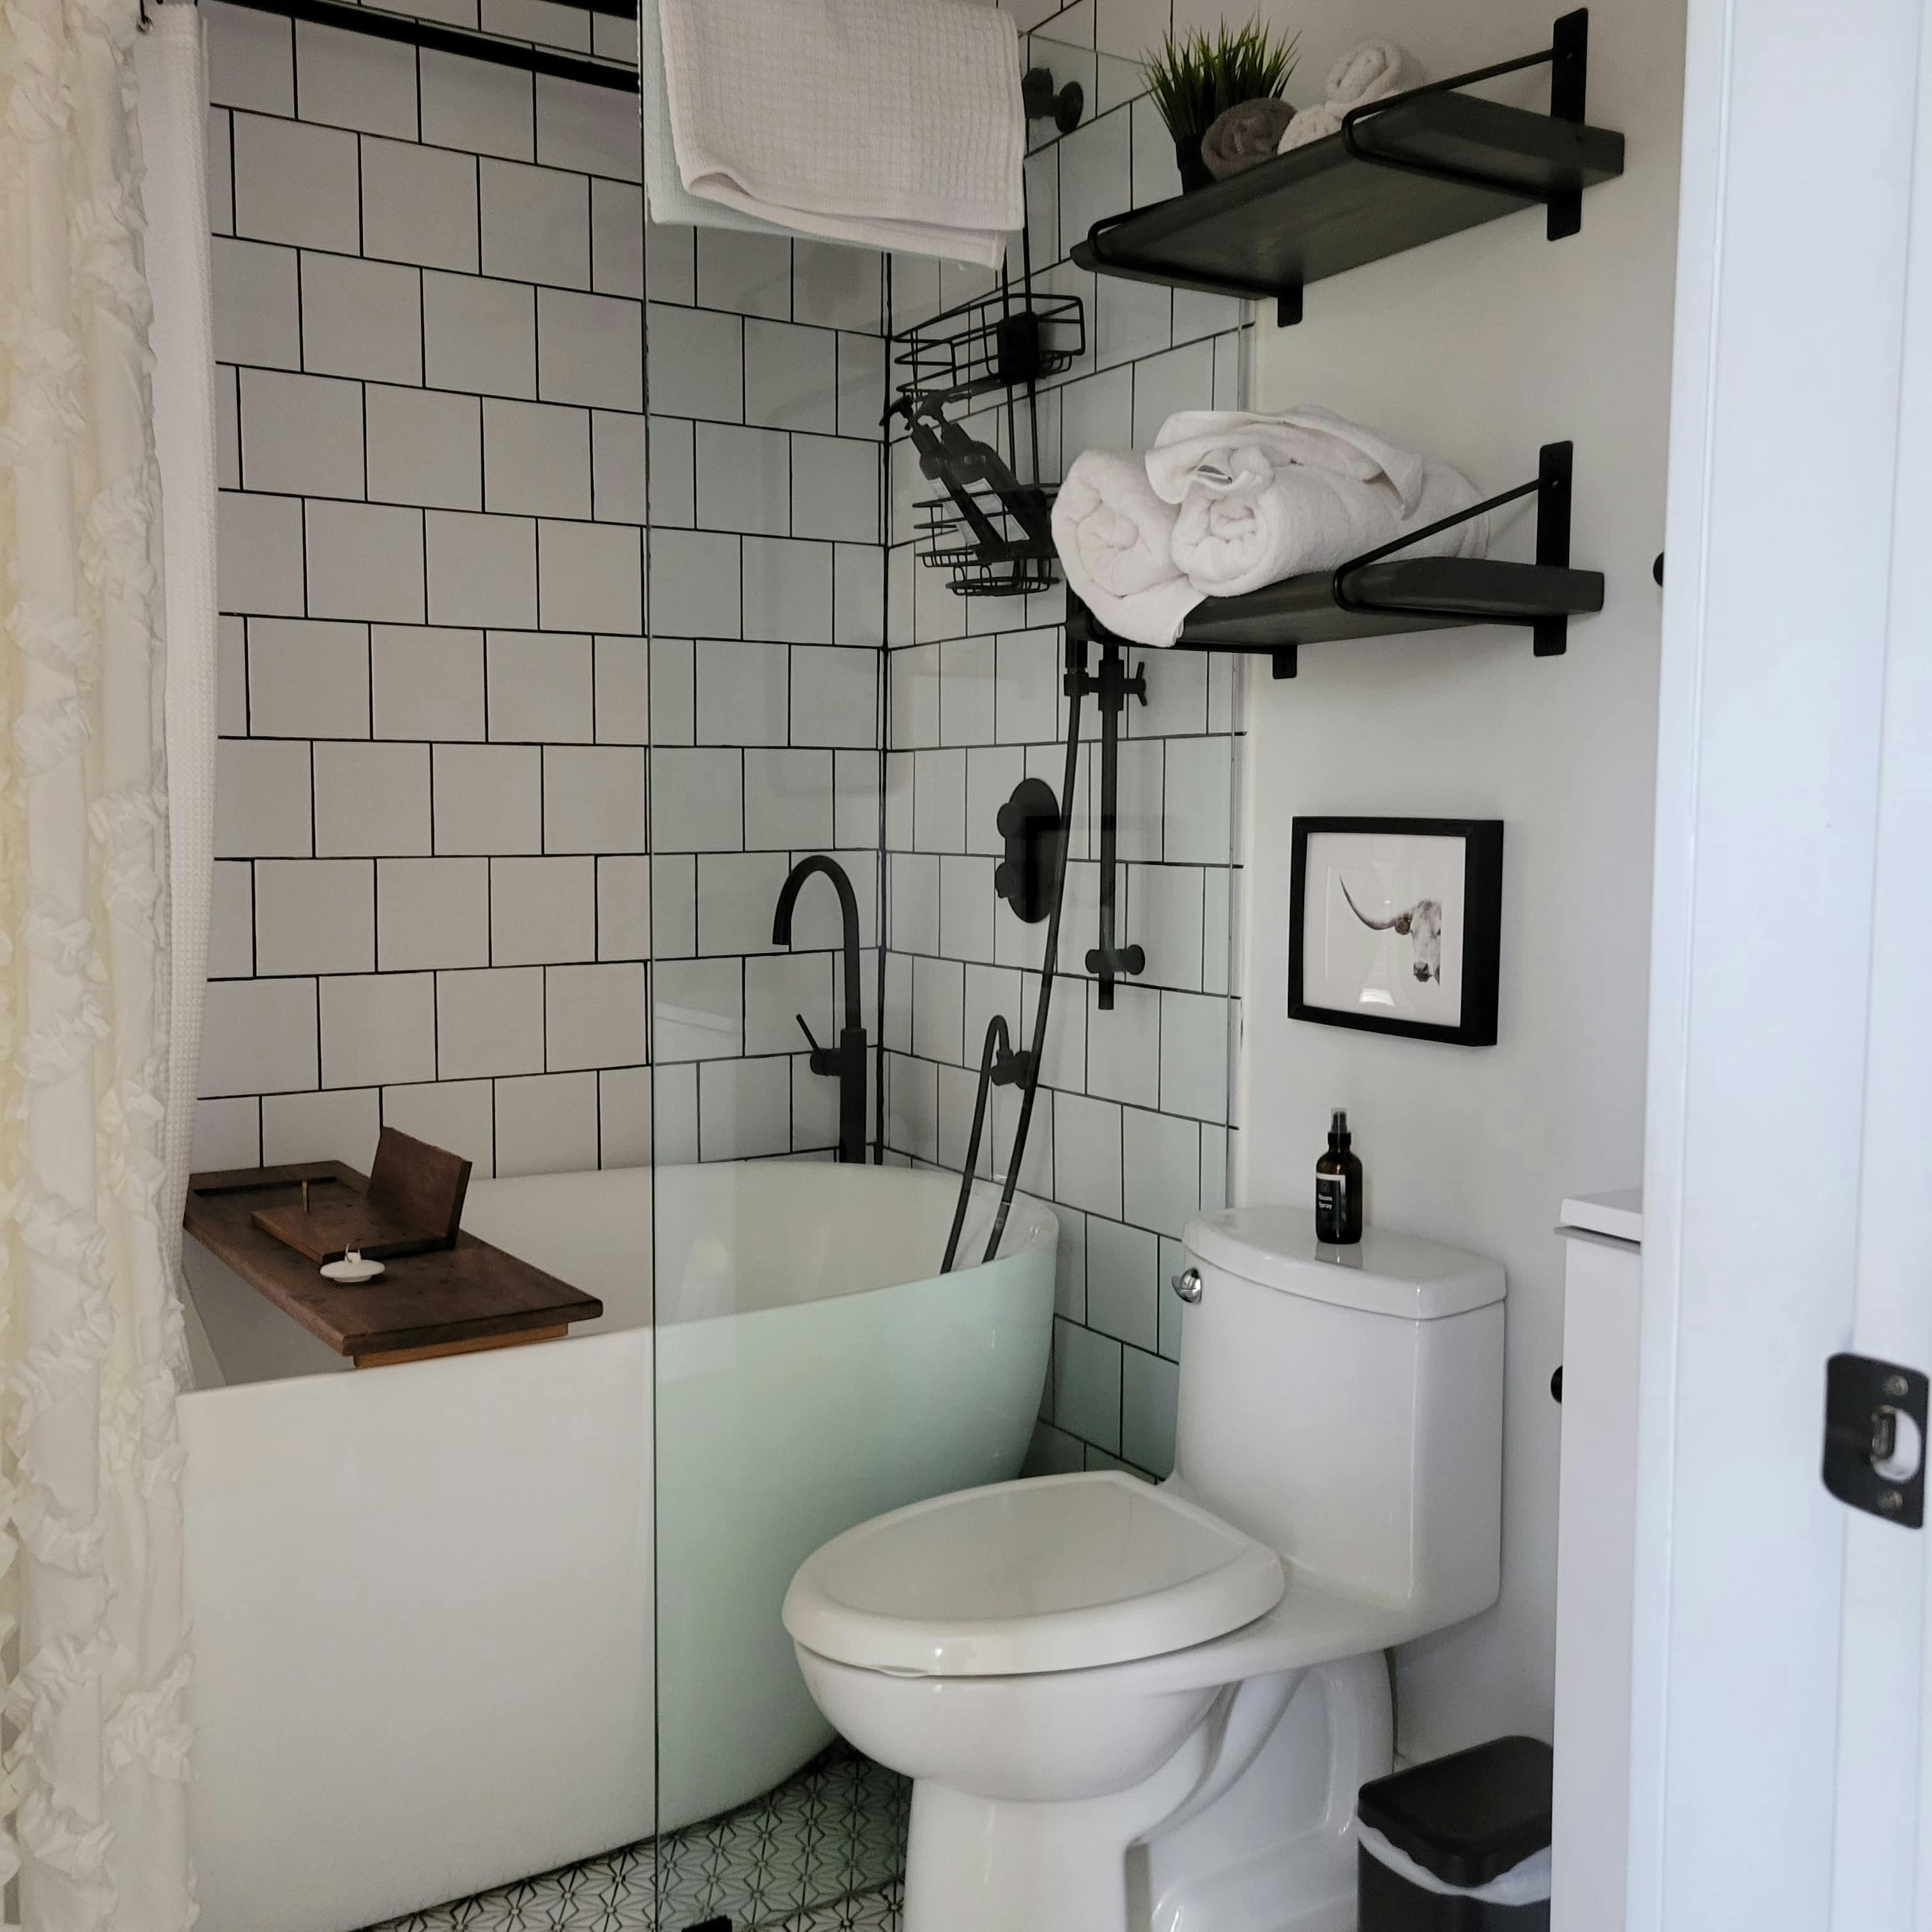 Aménager une petite salle de bain - Une petite salle de bain avec des rangements au-dessus des WC pour optimiser l'espace